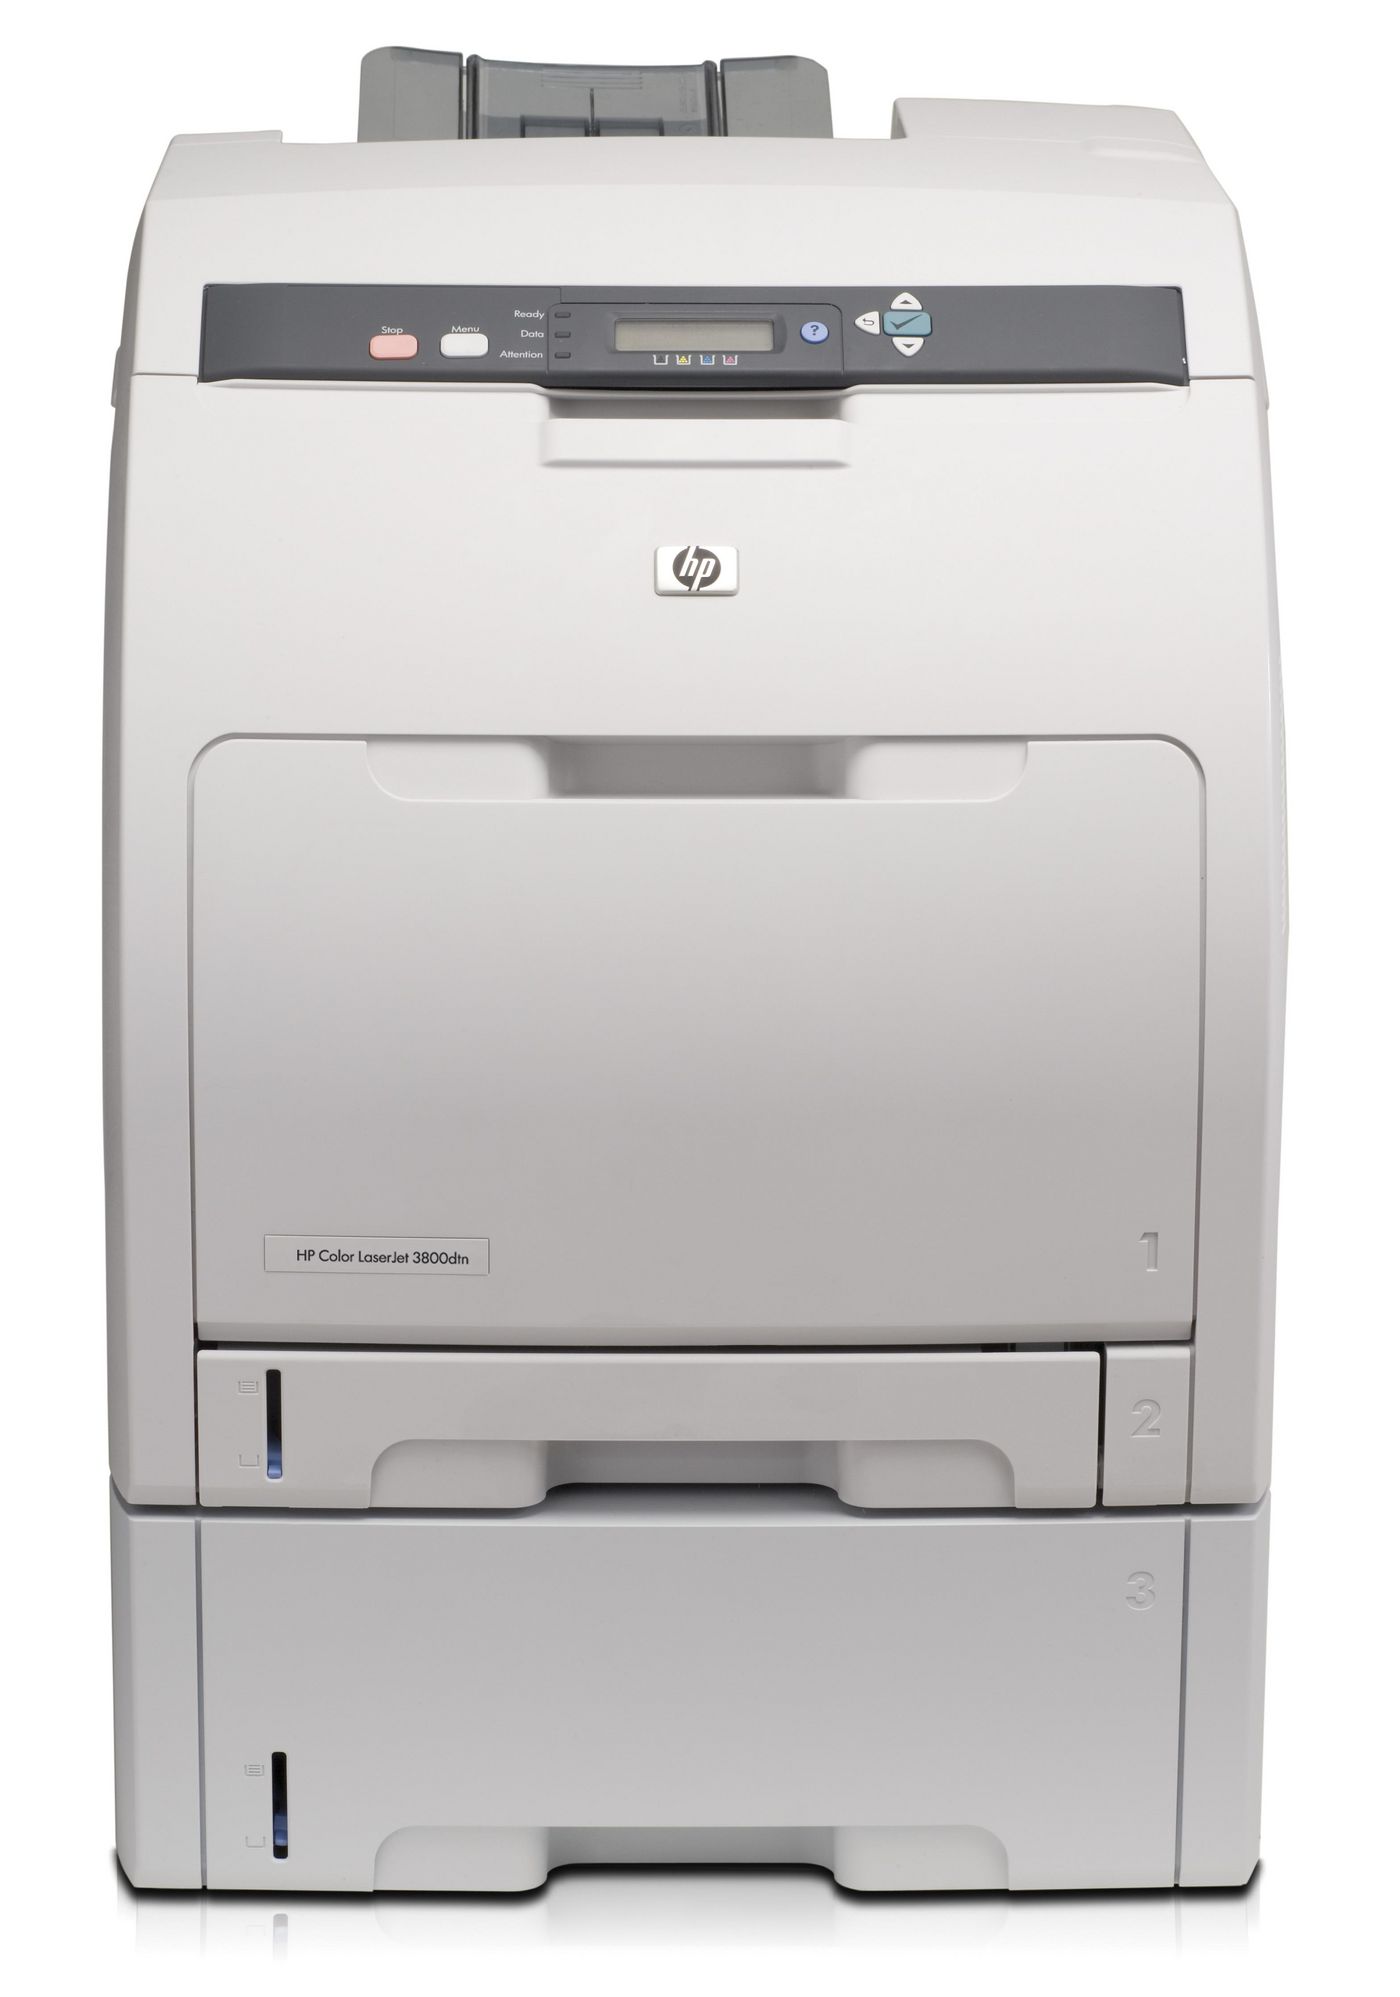 HP RP000355189 Color LaserJet 3800dtn Printer 